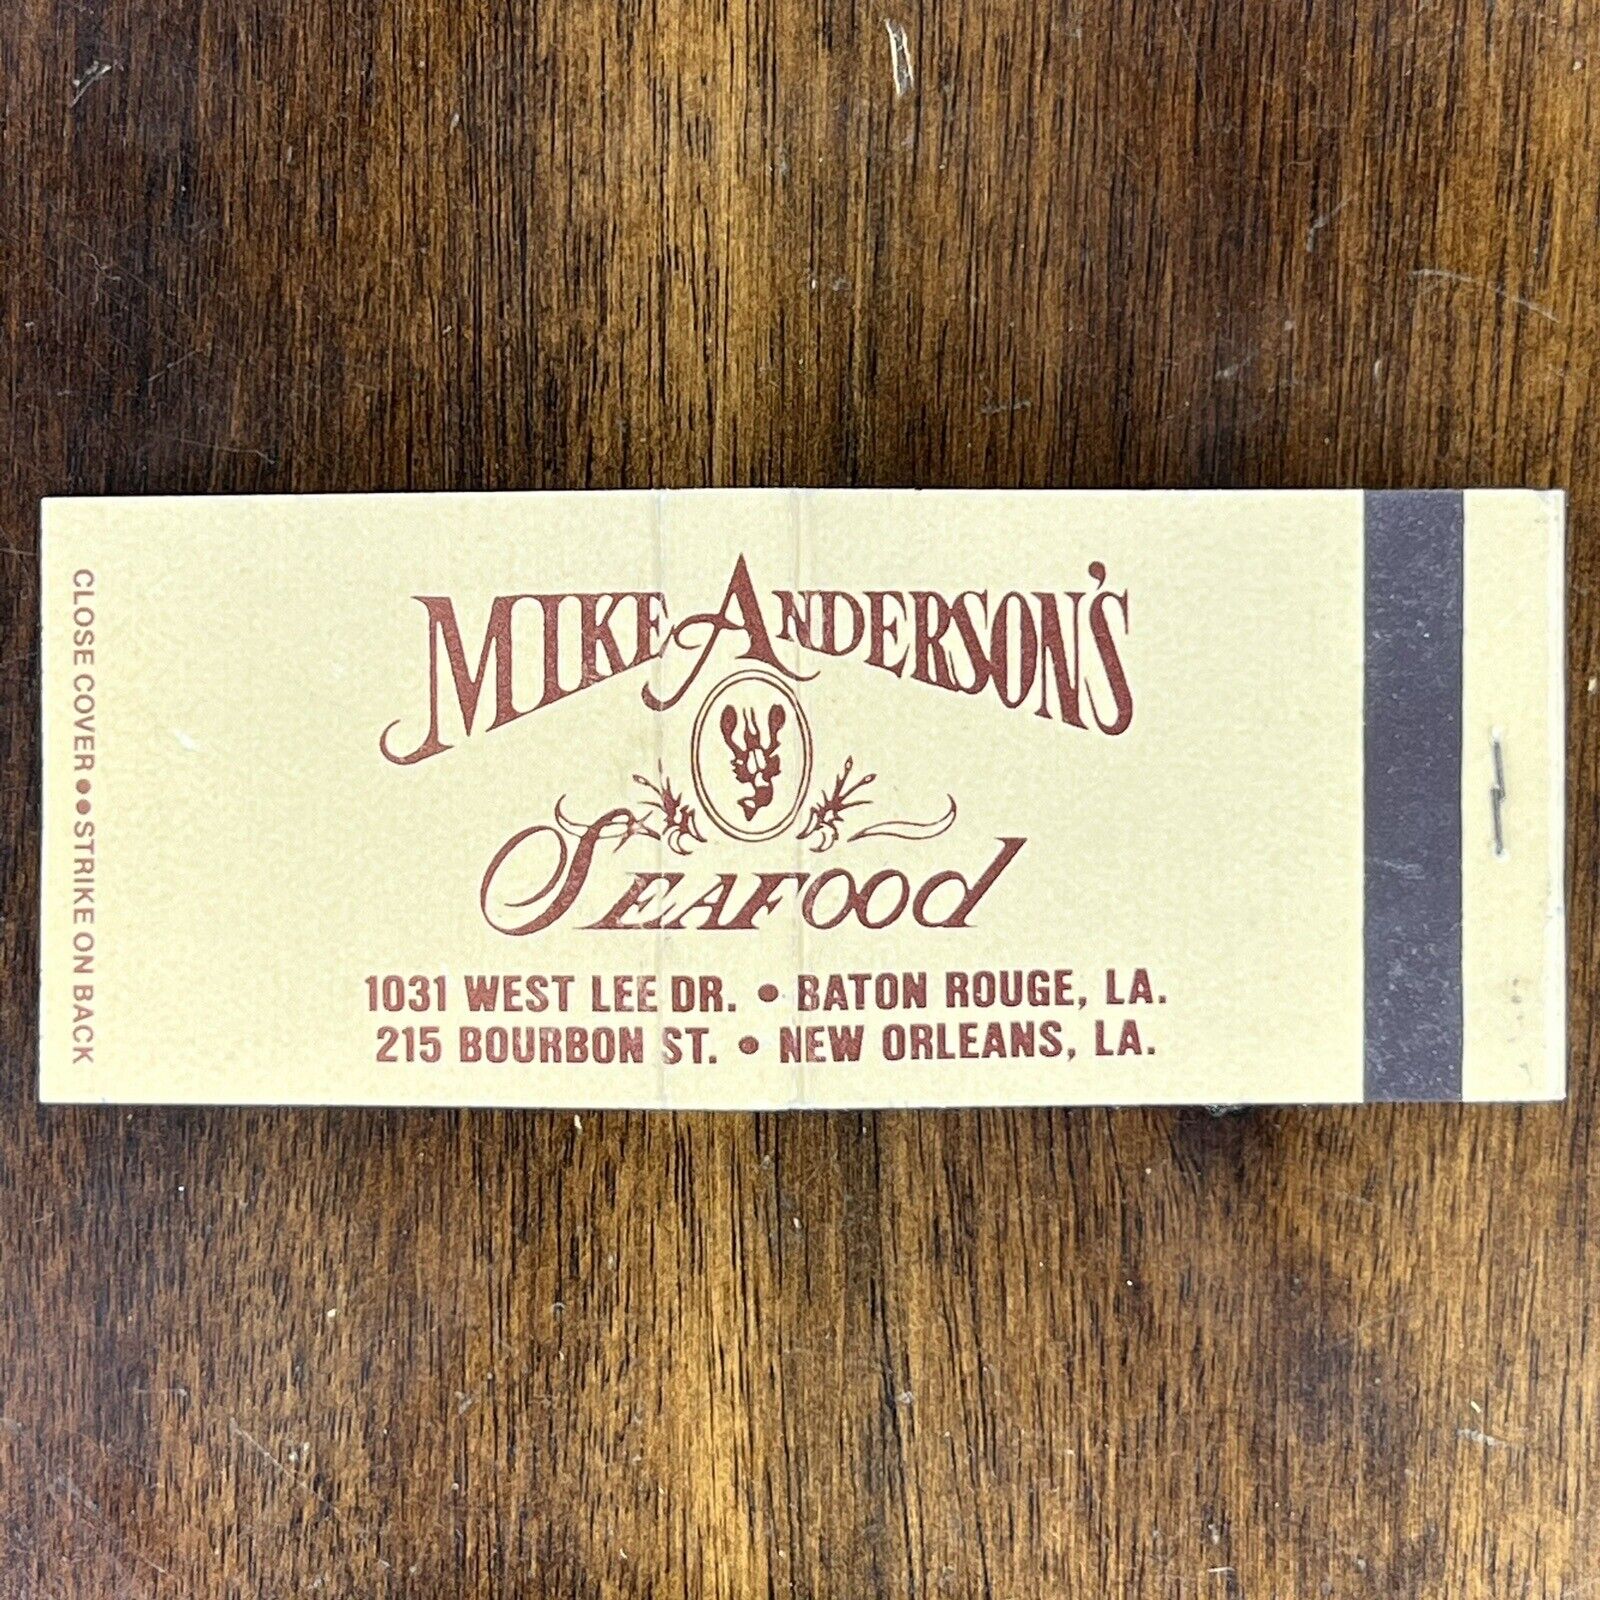 Vintage Matchbook Mike Anderson’s Restaurant Baton Rouge LA Matches Unstruck